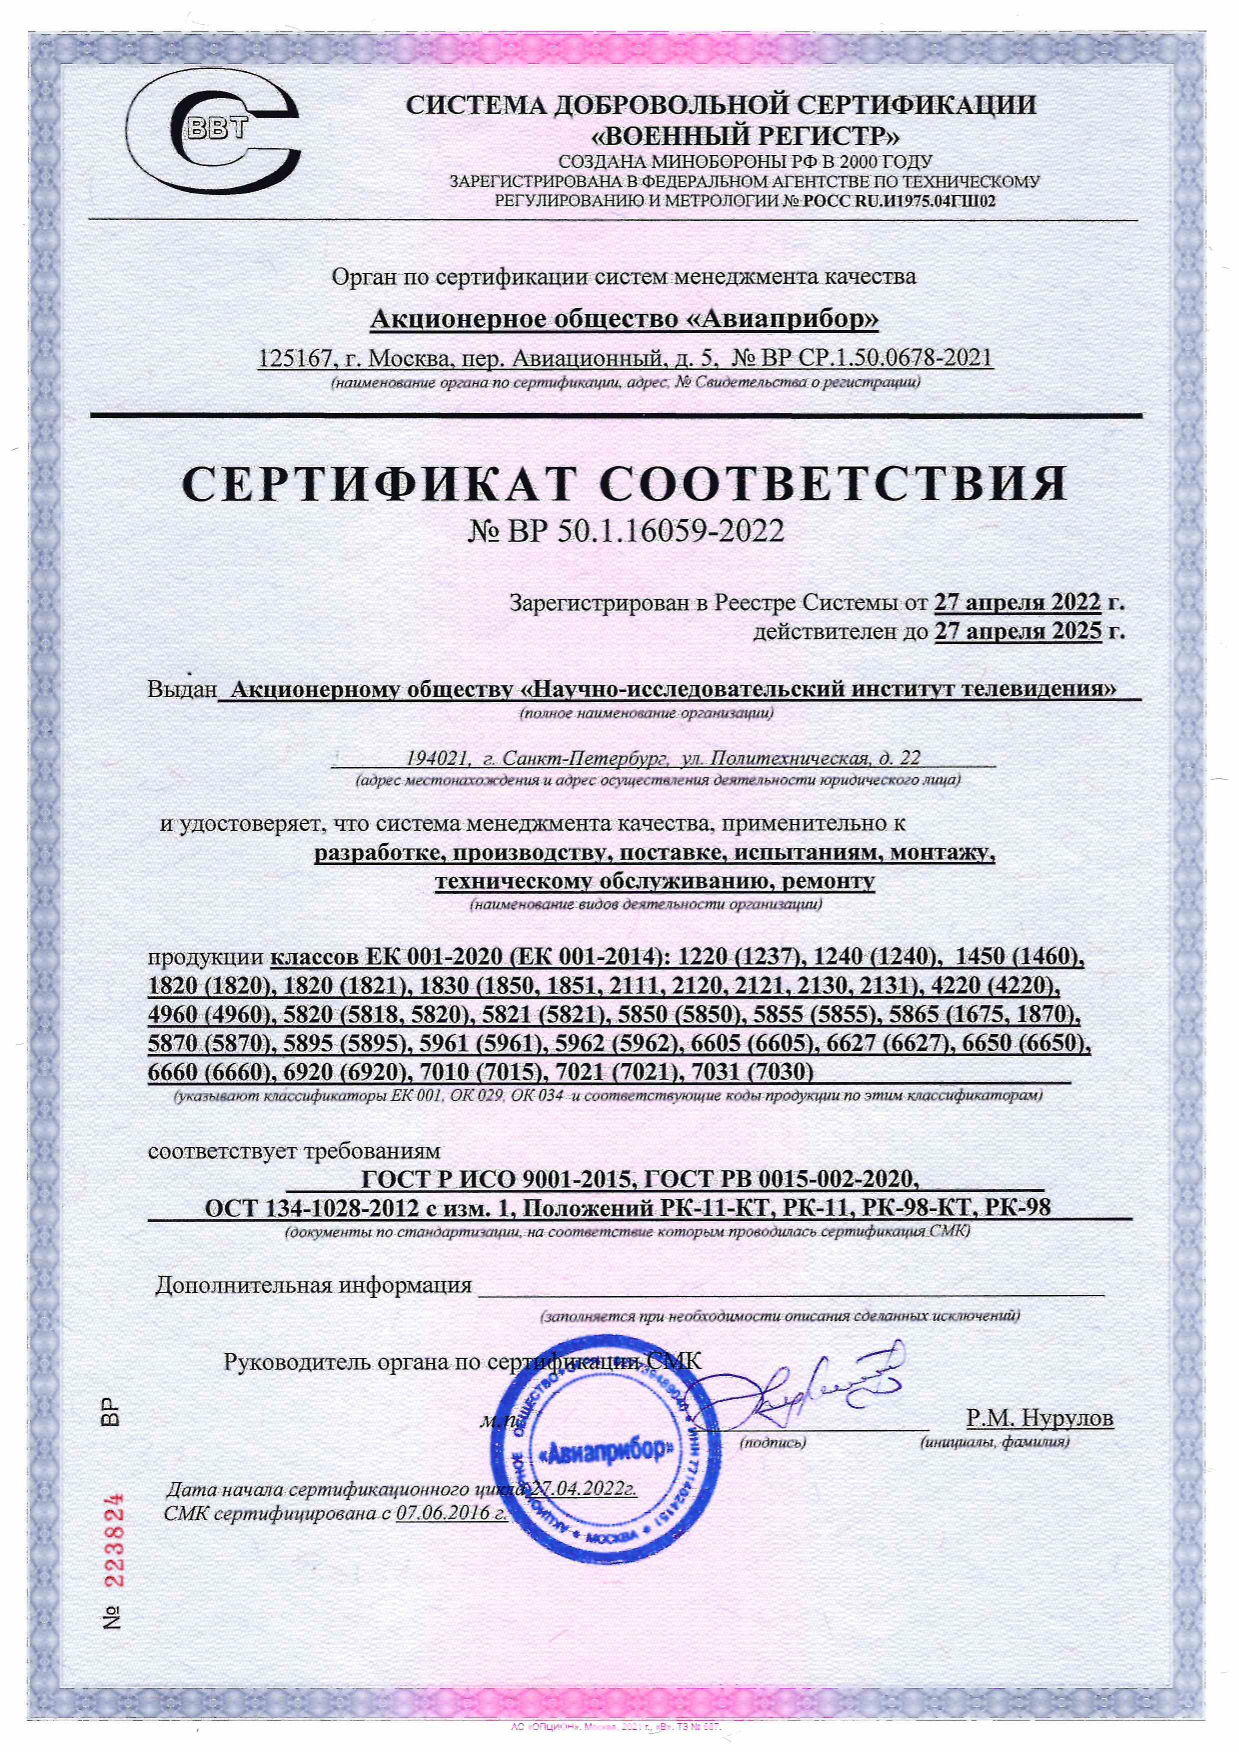 Сертификат соответствия от 27.04.2022 №ВР 50.1.16059-2022